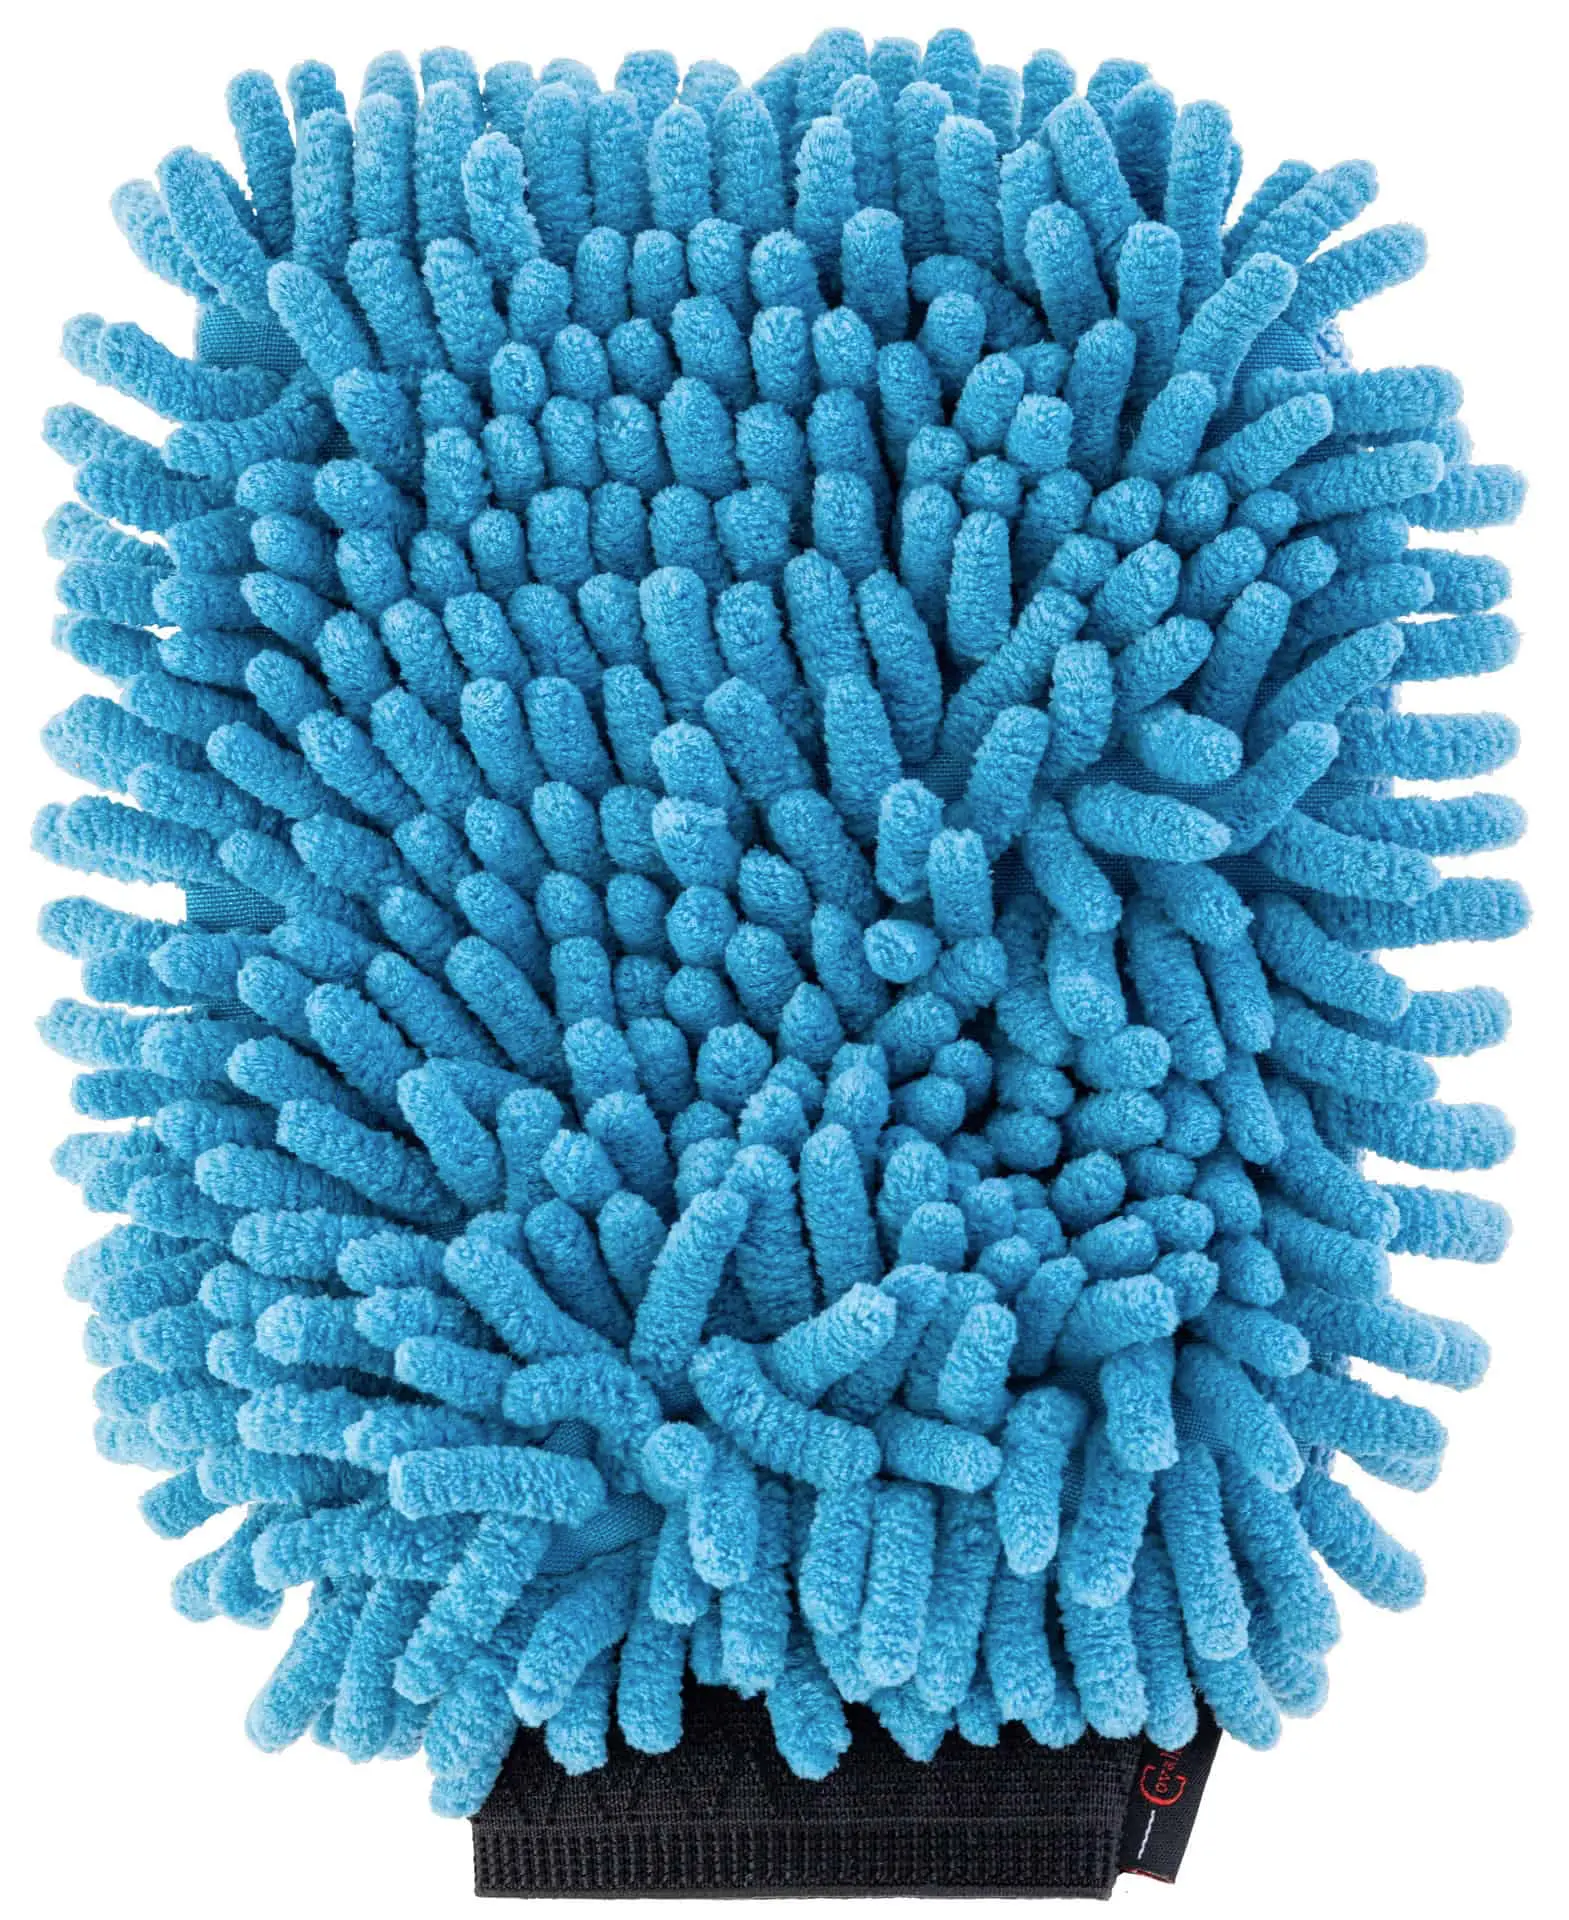 Mikrofiber rengöringshandske ljusblå